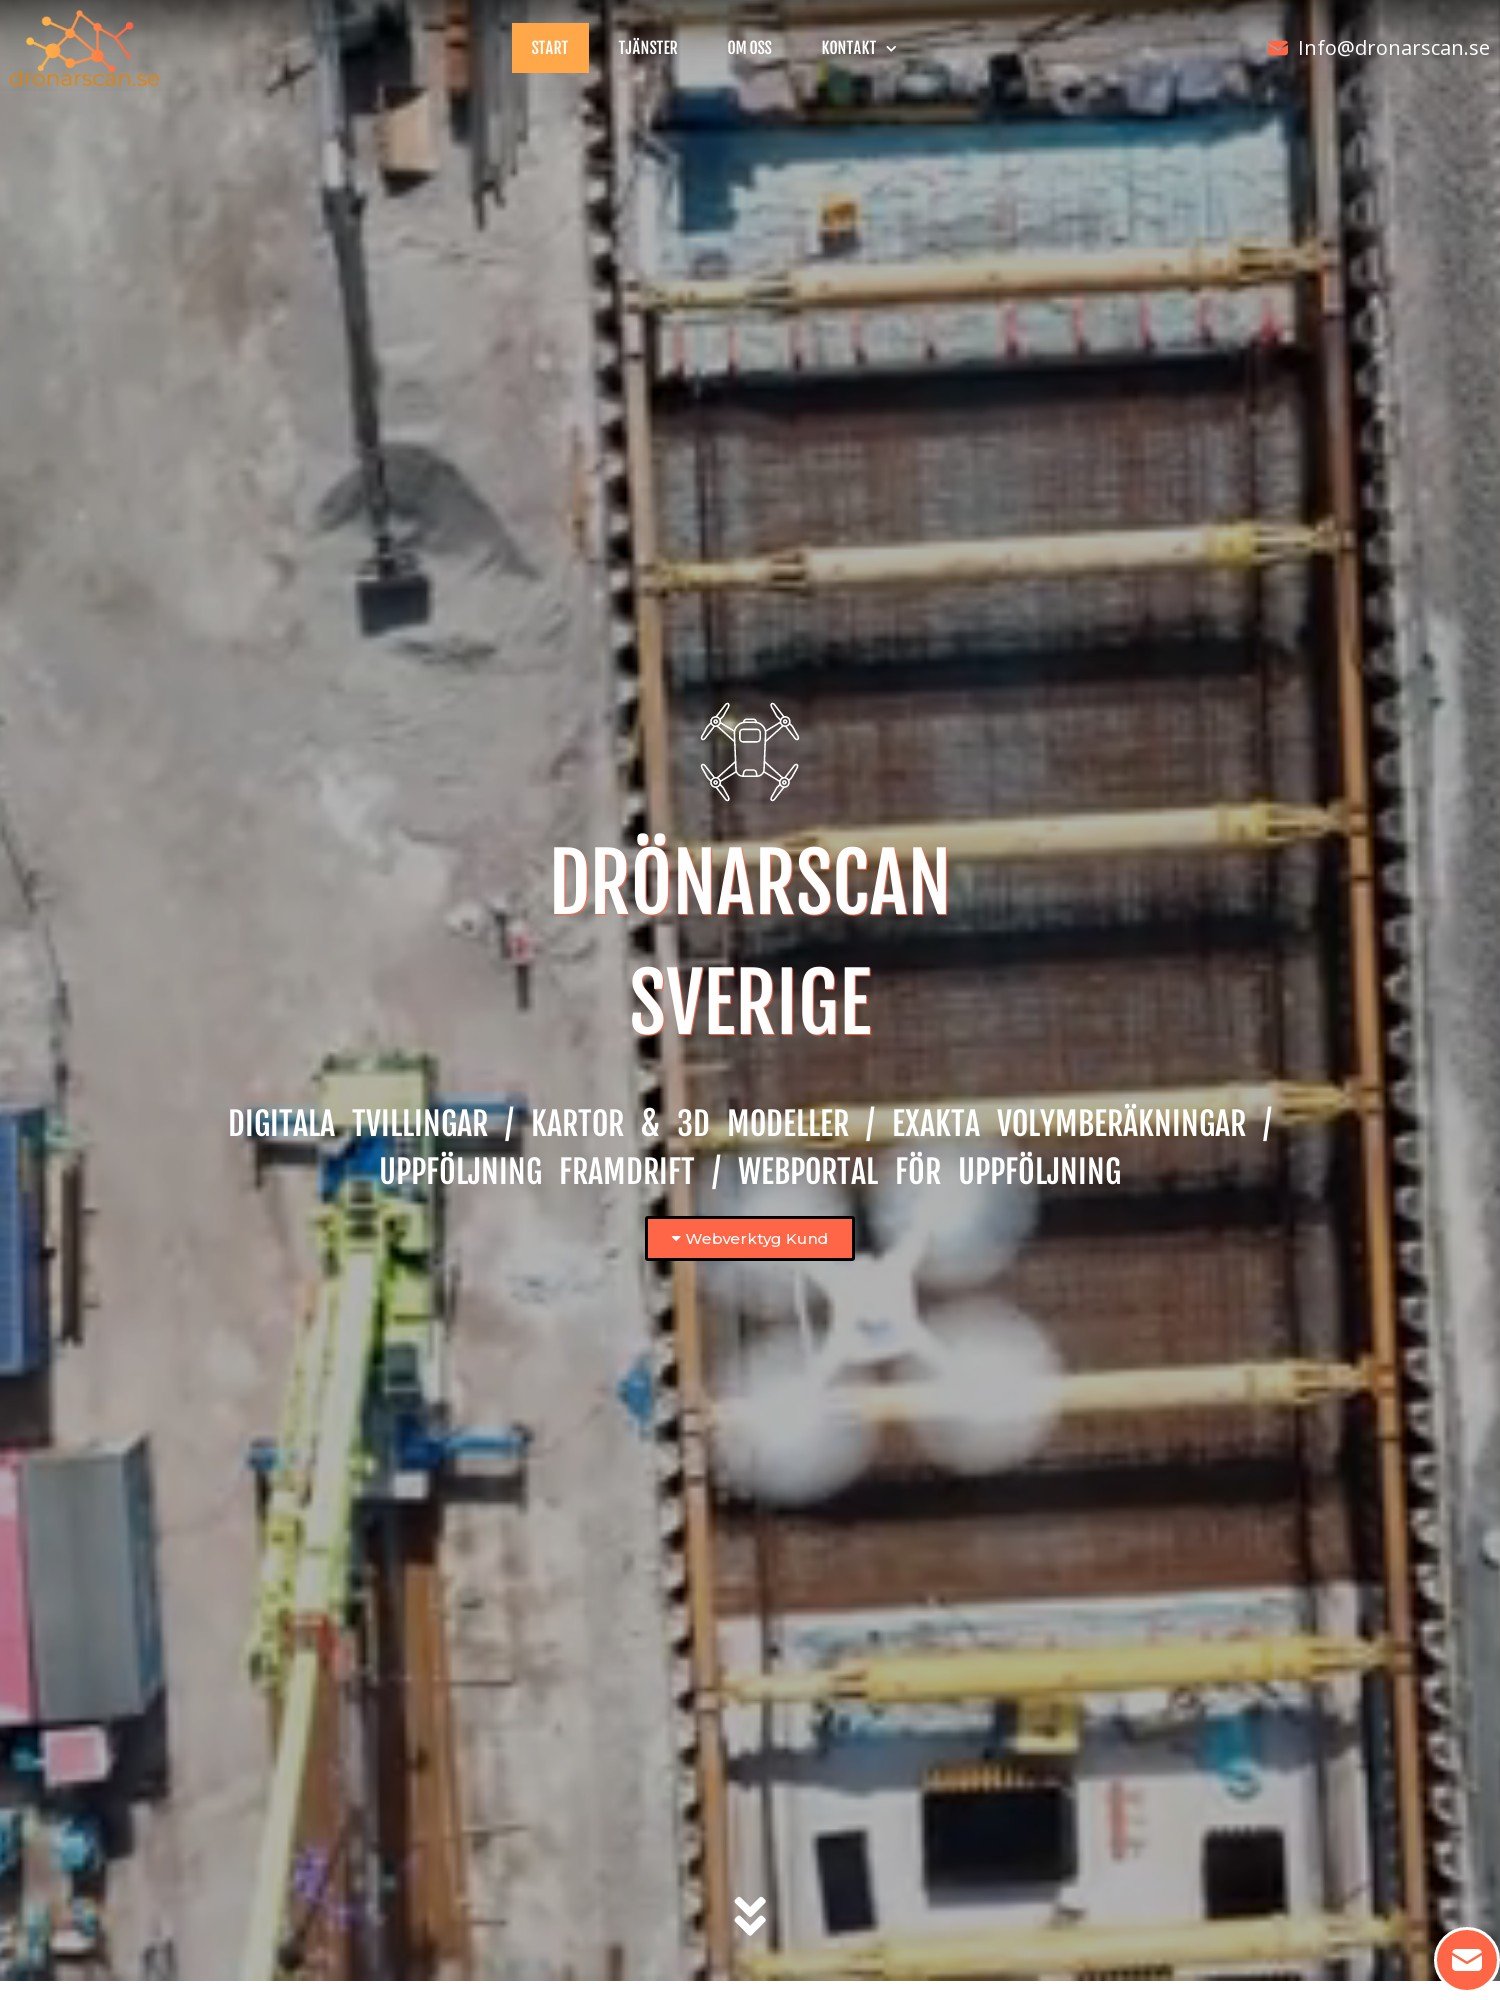 dronarscan.se – erbjuder avancerad scanning med Drönare. Genom flygfoton med drönare sätter vi samman exakta kartor och 3D modeller. Vi erbjuder våra tjänster över hela Sverige och innehar rätt licenser samt försä